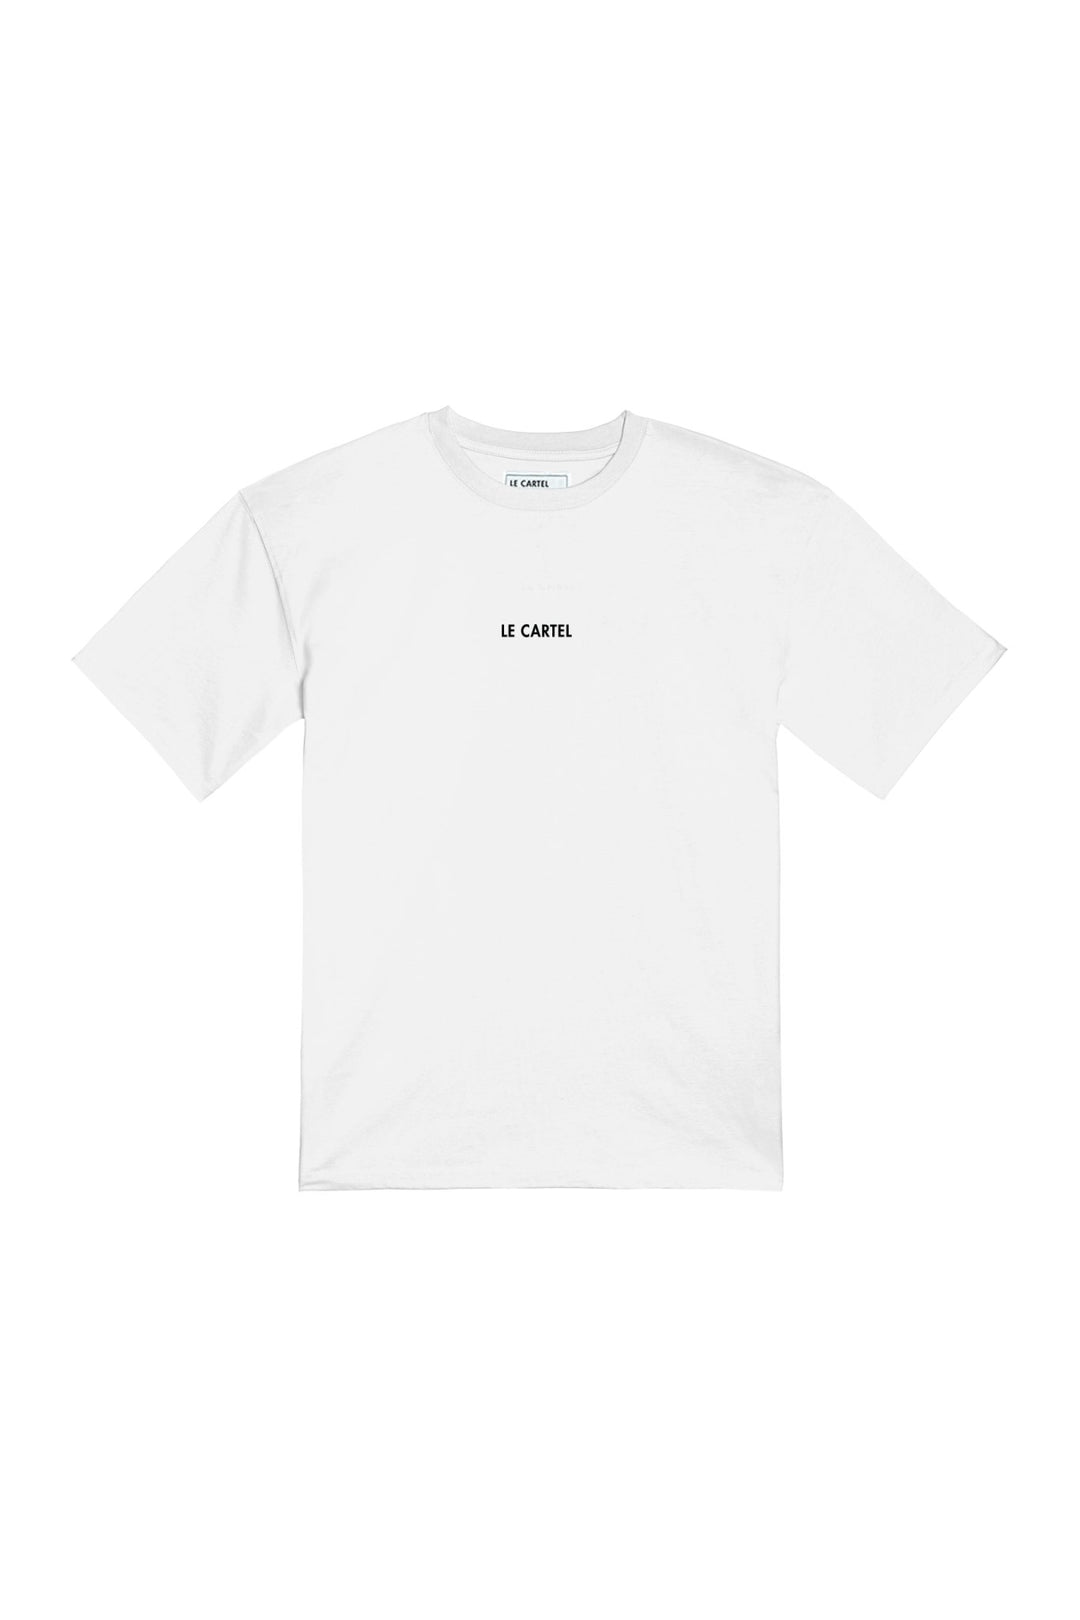 FORTUNE CROISSANT・T-shirt unisexe・Blanc - Le Cartel